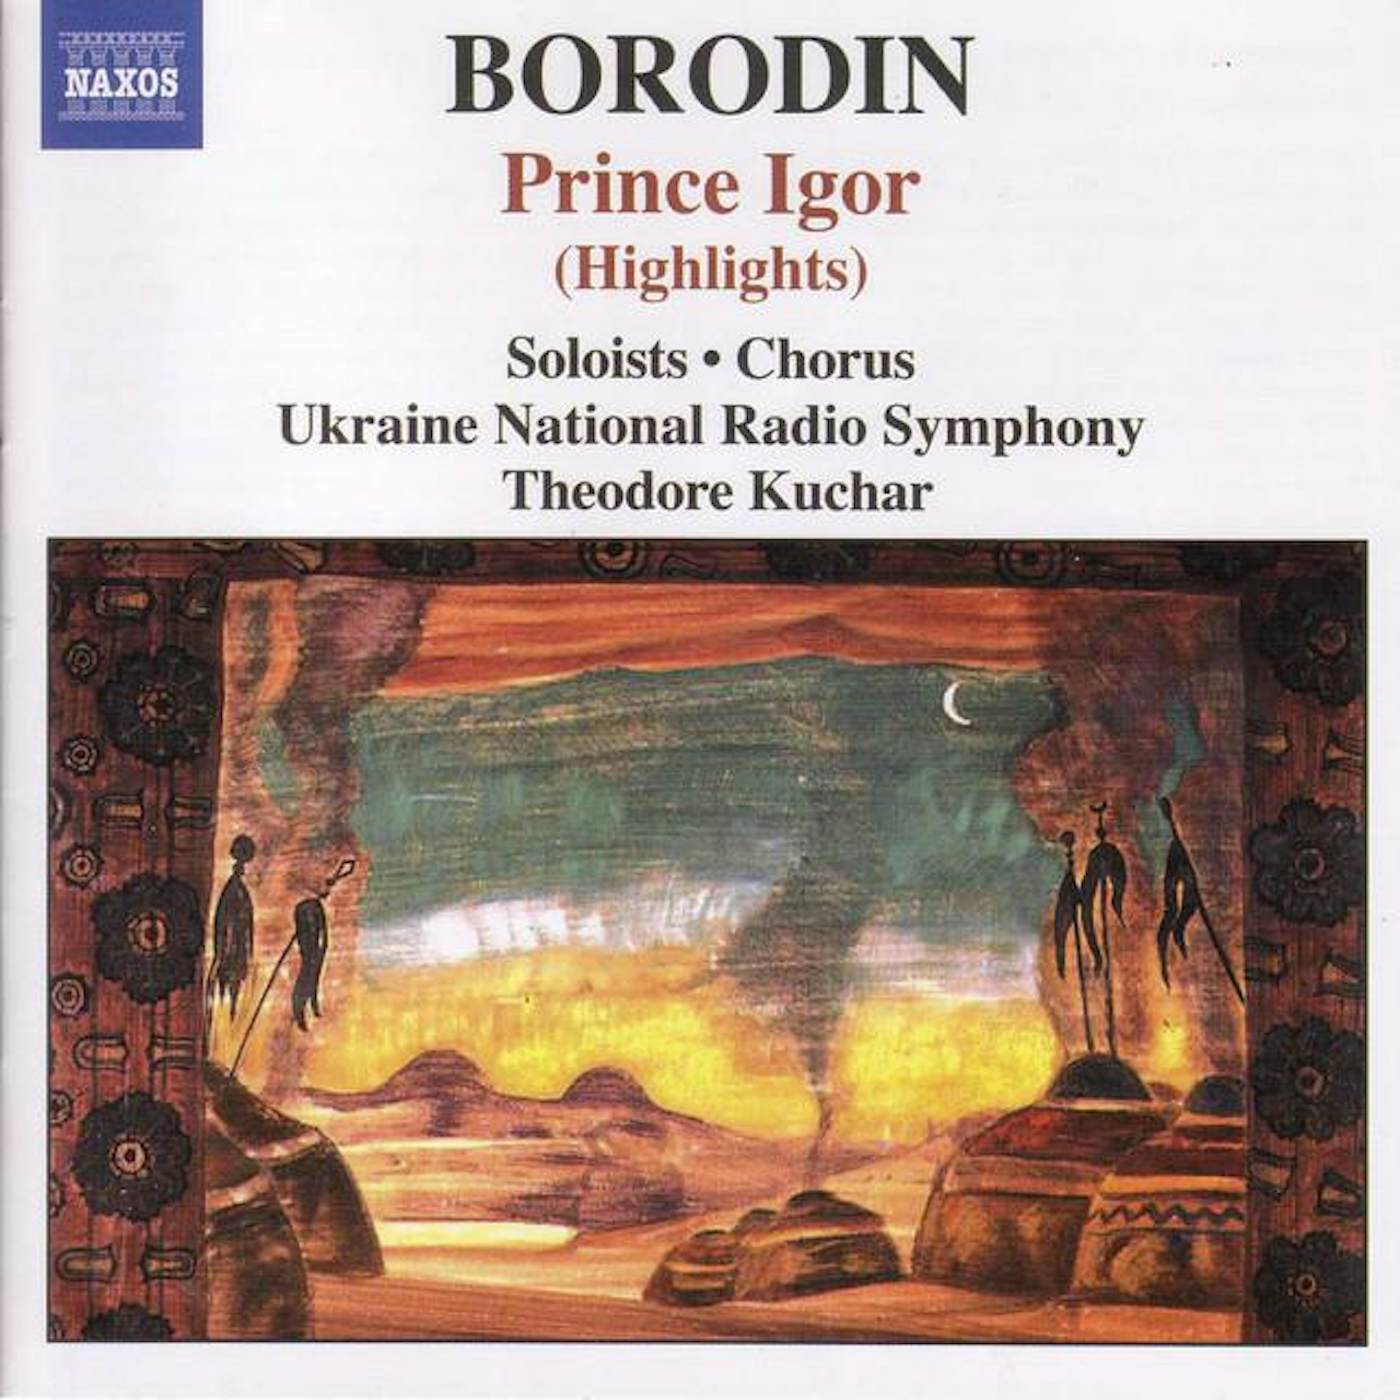 Ukraine National Radio Symphony Orchestra